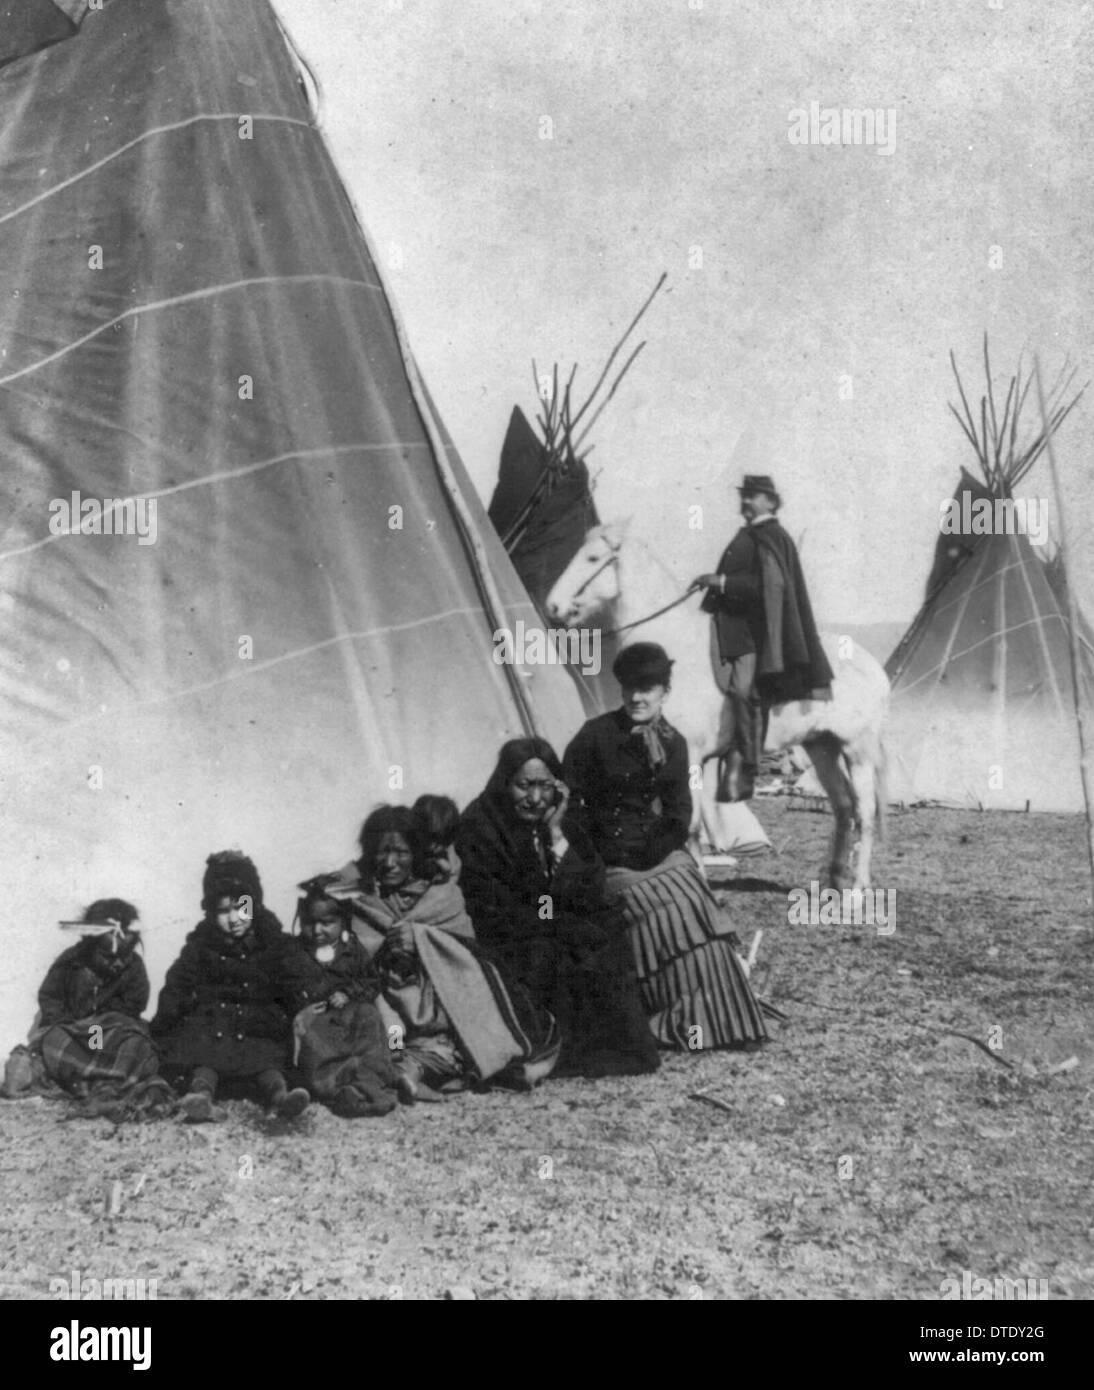 Toro Seduto, squaw e gemelli - seduti davanti al tepee con un bianco donna e bambino; papoose sulla sua squaw torna; ufficiale di cavalleria a cavallo in background. 1882 Foto Stock